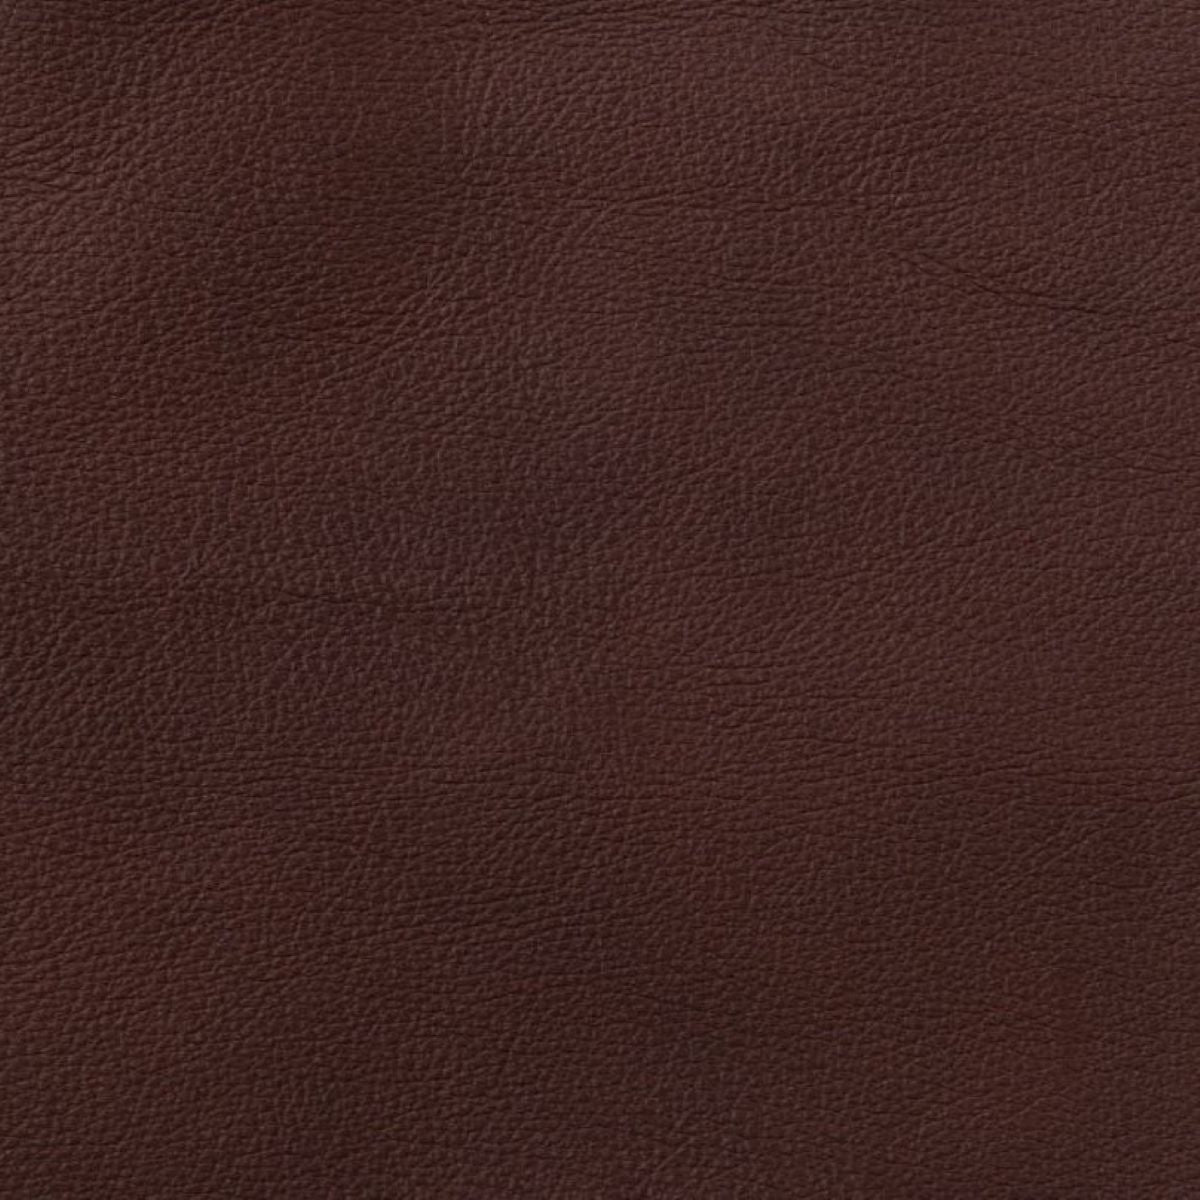 Mahogany-Heartland Leather